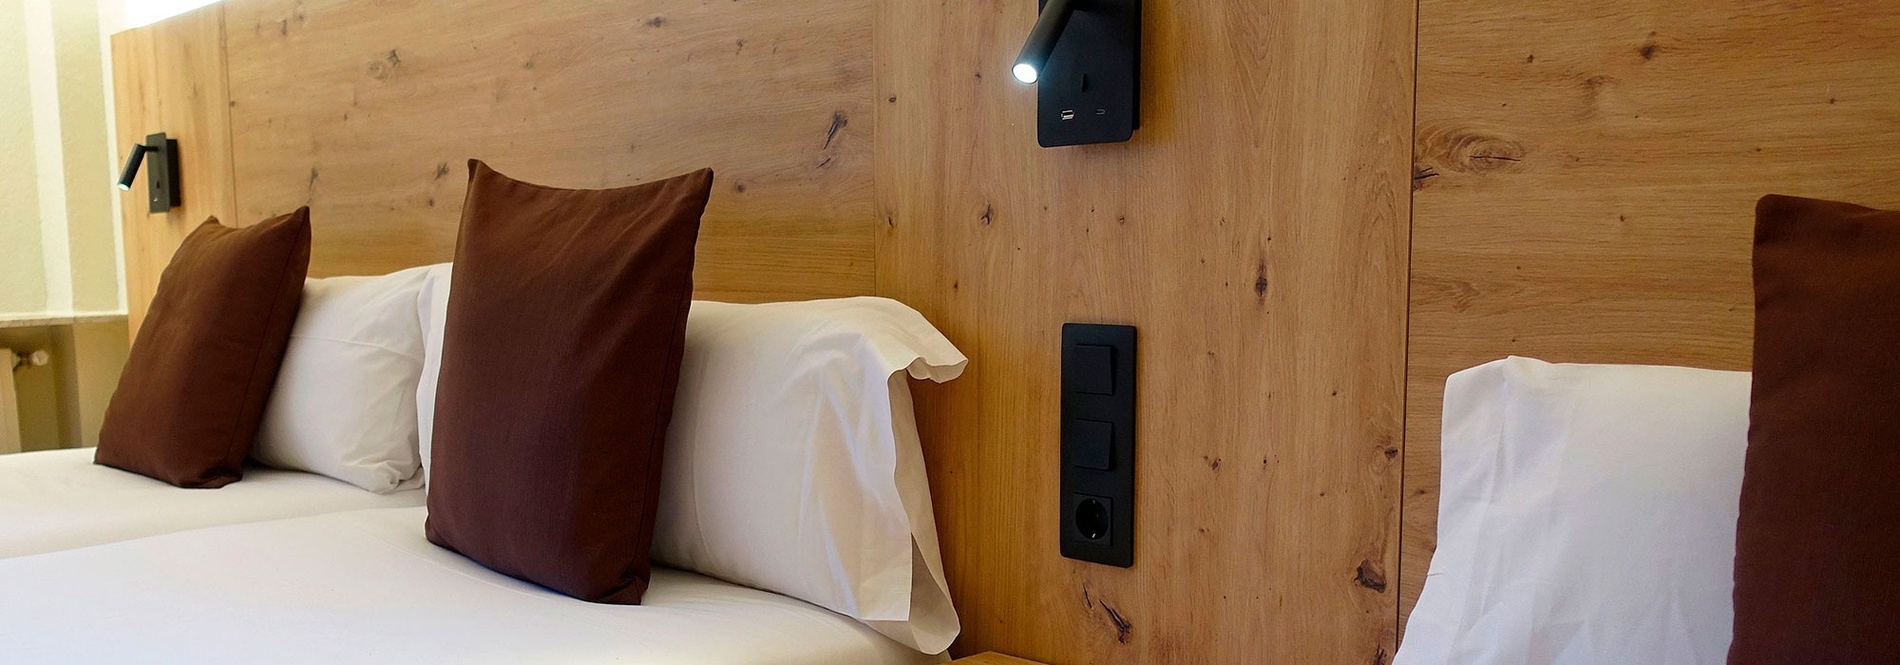 una cama con una cabecera de madera y almohadas marrones y blancas